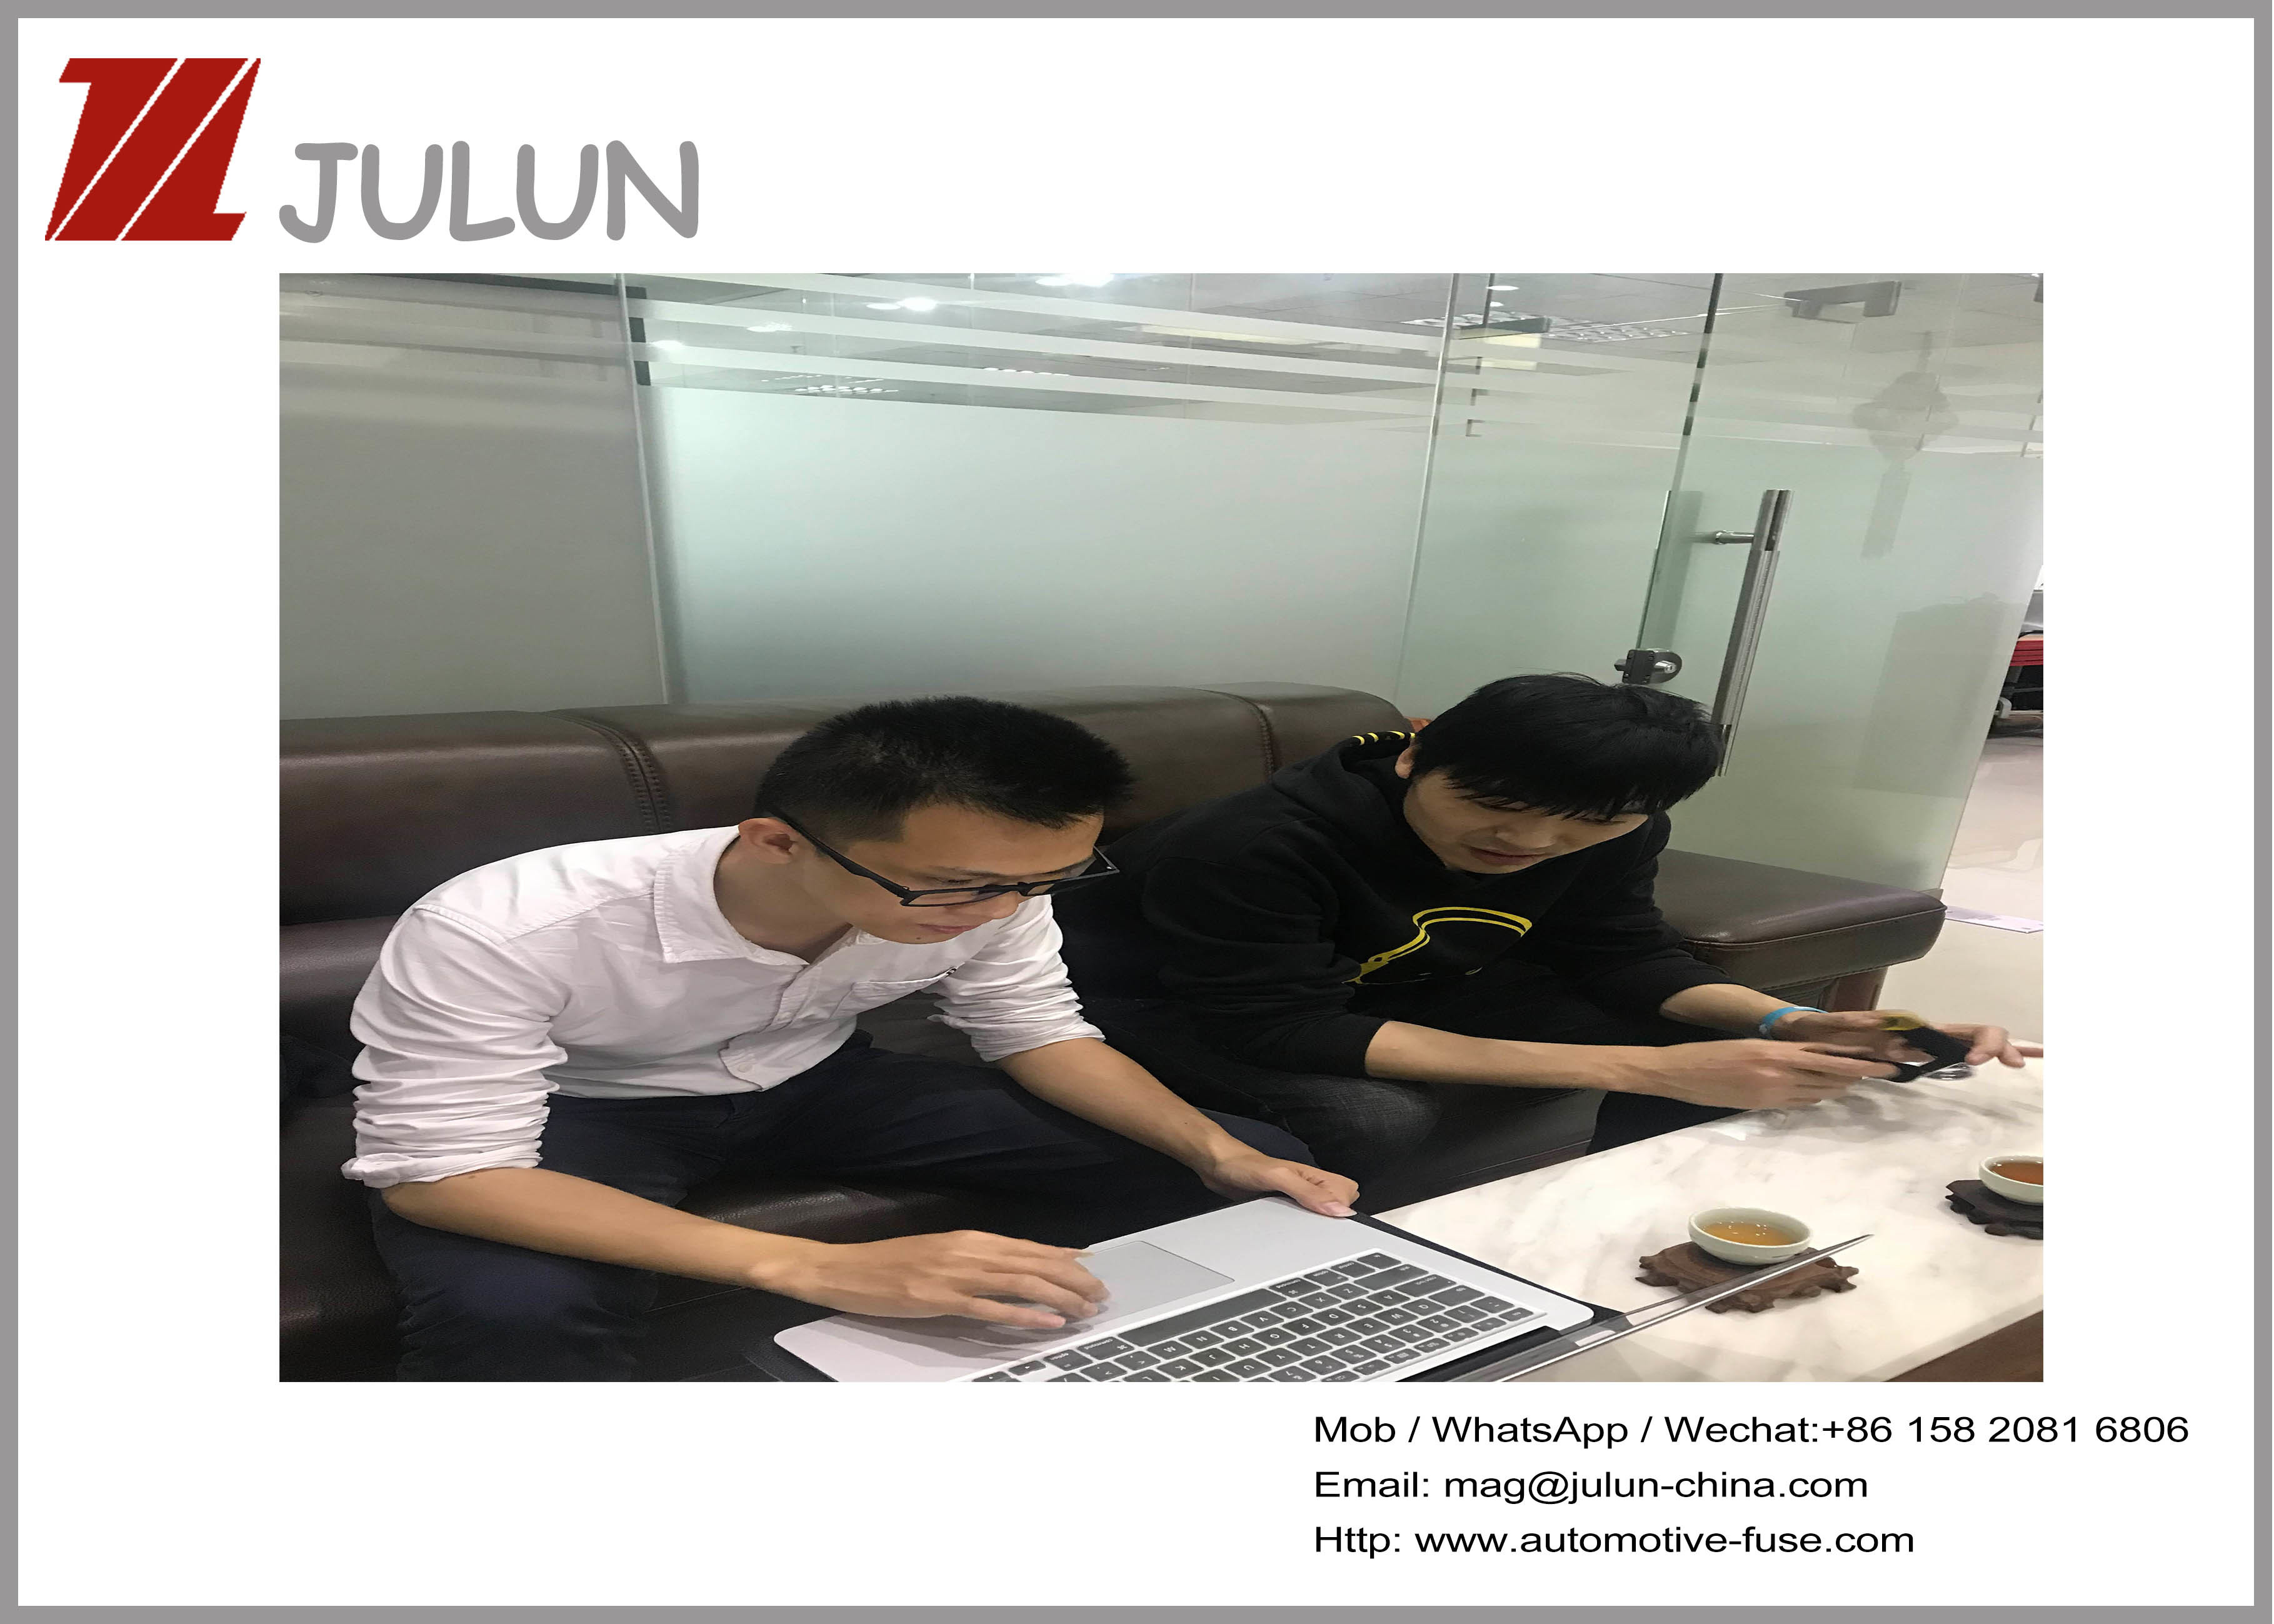 China dongguan Julun  electronics co.,ltd Perfil da companhia